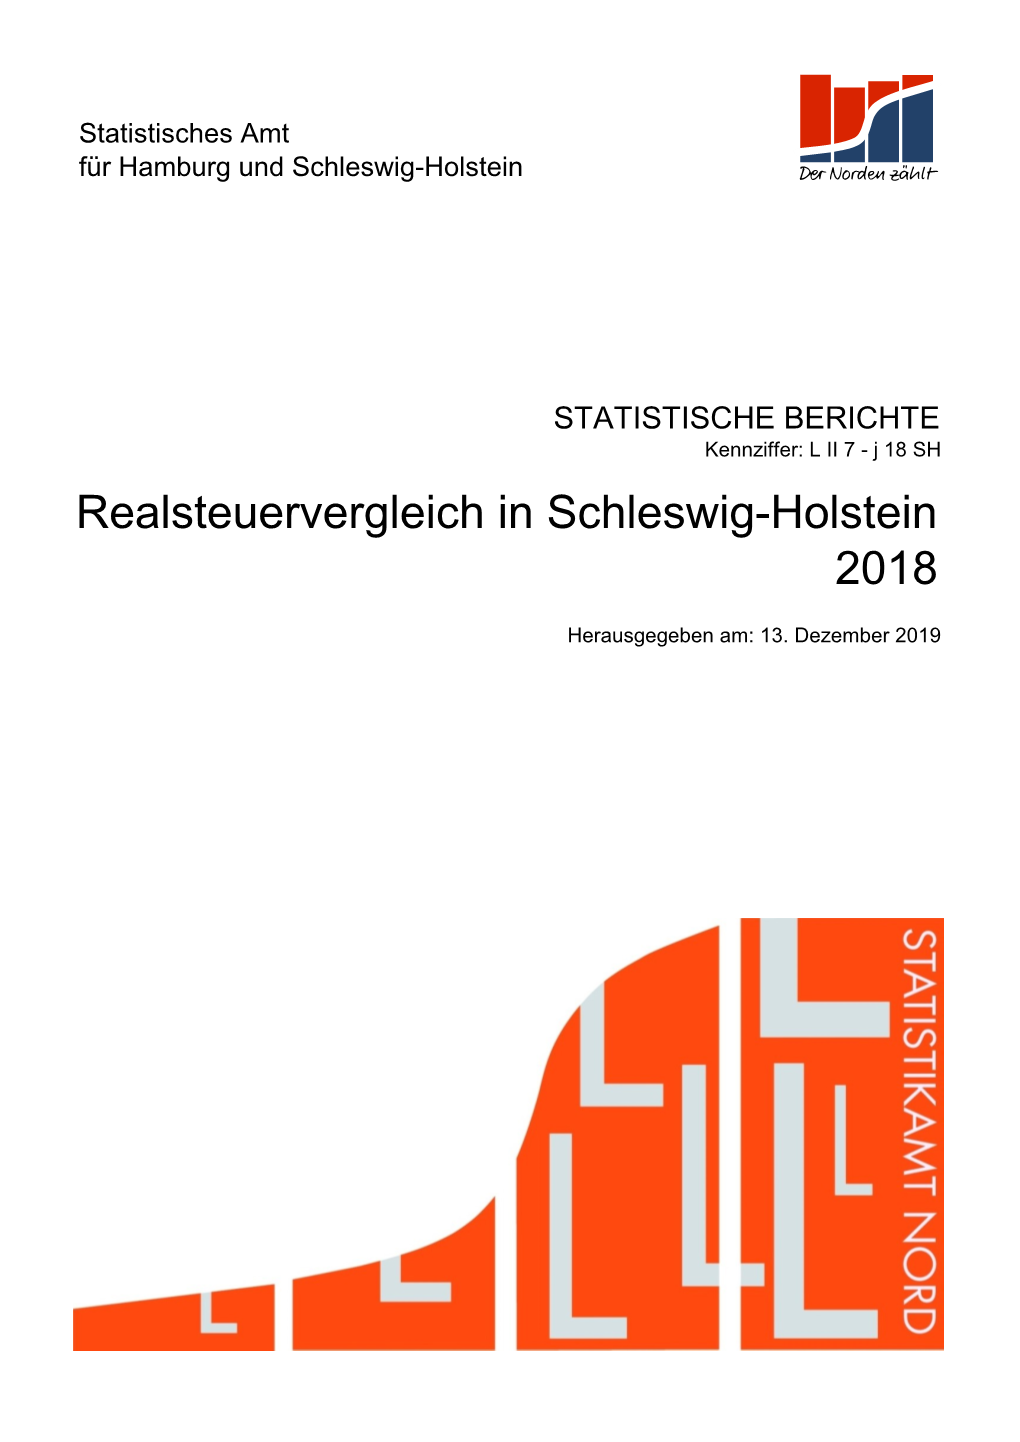 2018 Realsteuervergleich in Schleswig-Holstein